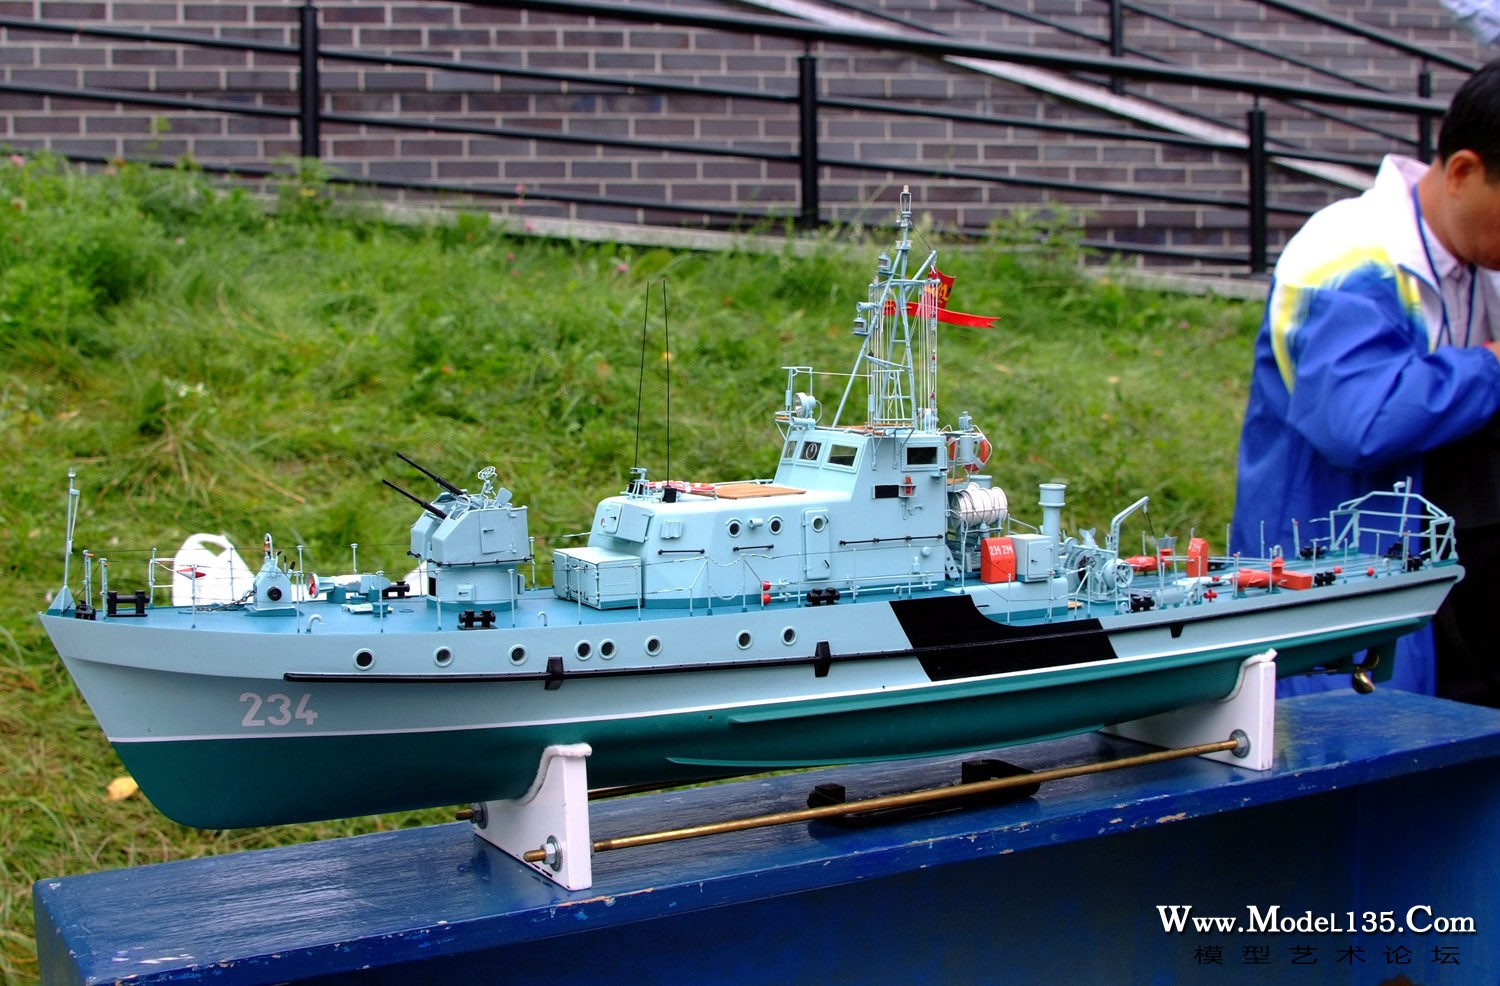 b8:获得F2A青年组外观第一的巡逻艇模型